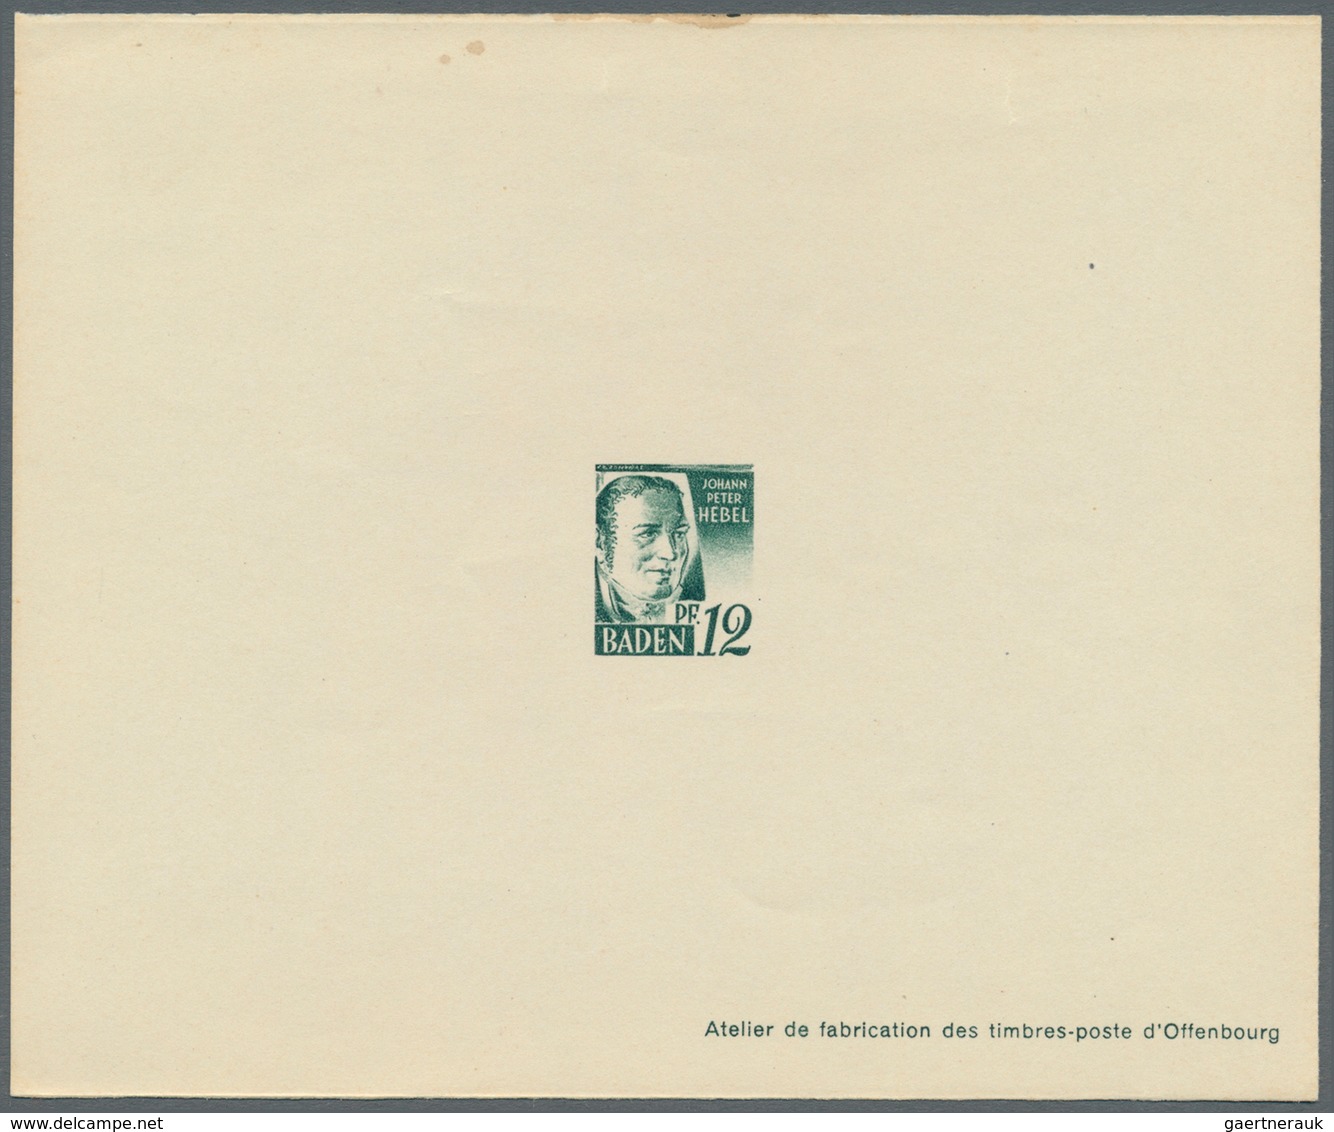 20653 Französische Zone - Baden: 1947, 2 Pfg. bis 1 M. Freimarken als Ministerblocks auf Kartonpapier mit